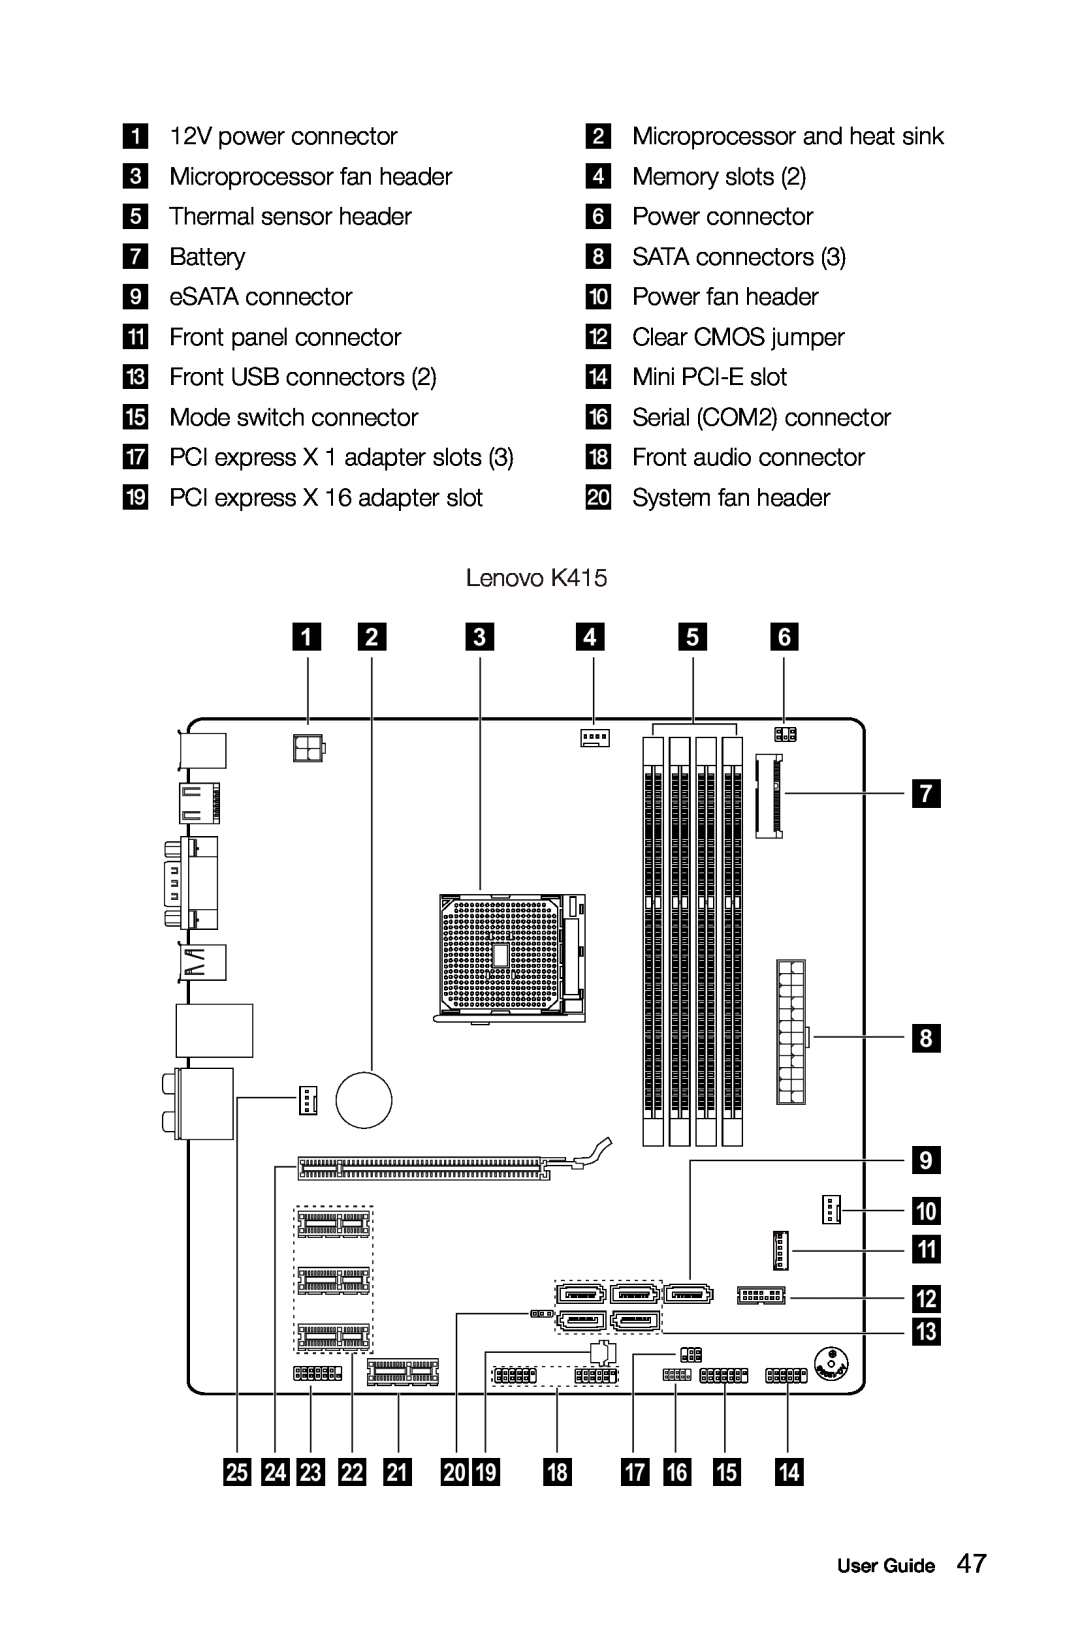 Lenovo 10086/3109/4743 [K430], 10121/90A1 [K450 ES], 10120/90A0 [K450 NON-ES], 10089/1168/4744 [K410] manual Lenovo K415 